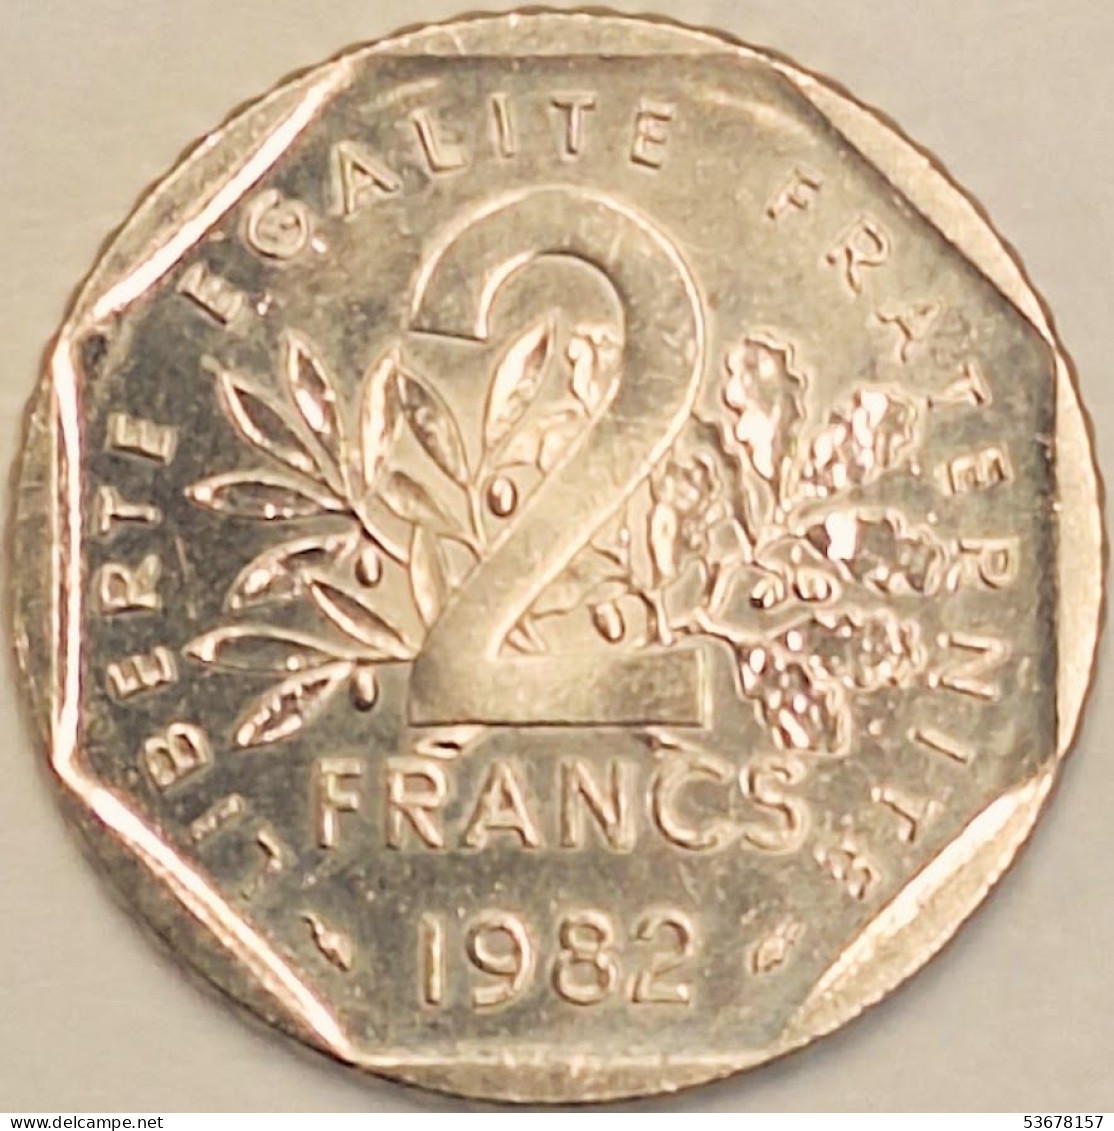 France - 2 Francs 1982, KM# 942.1 (#4326) - 2 Francs